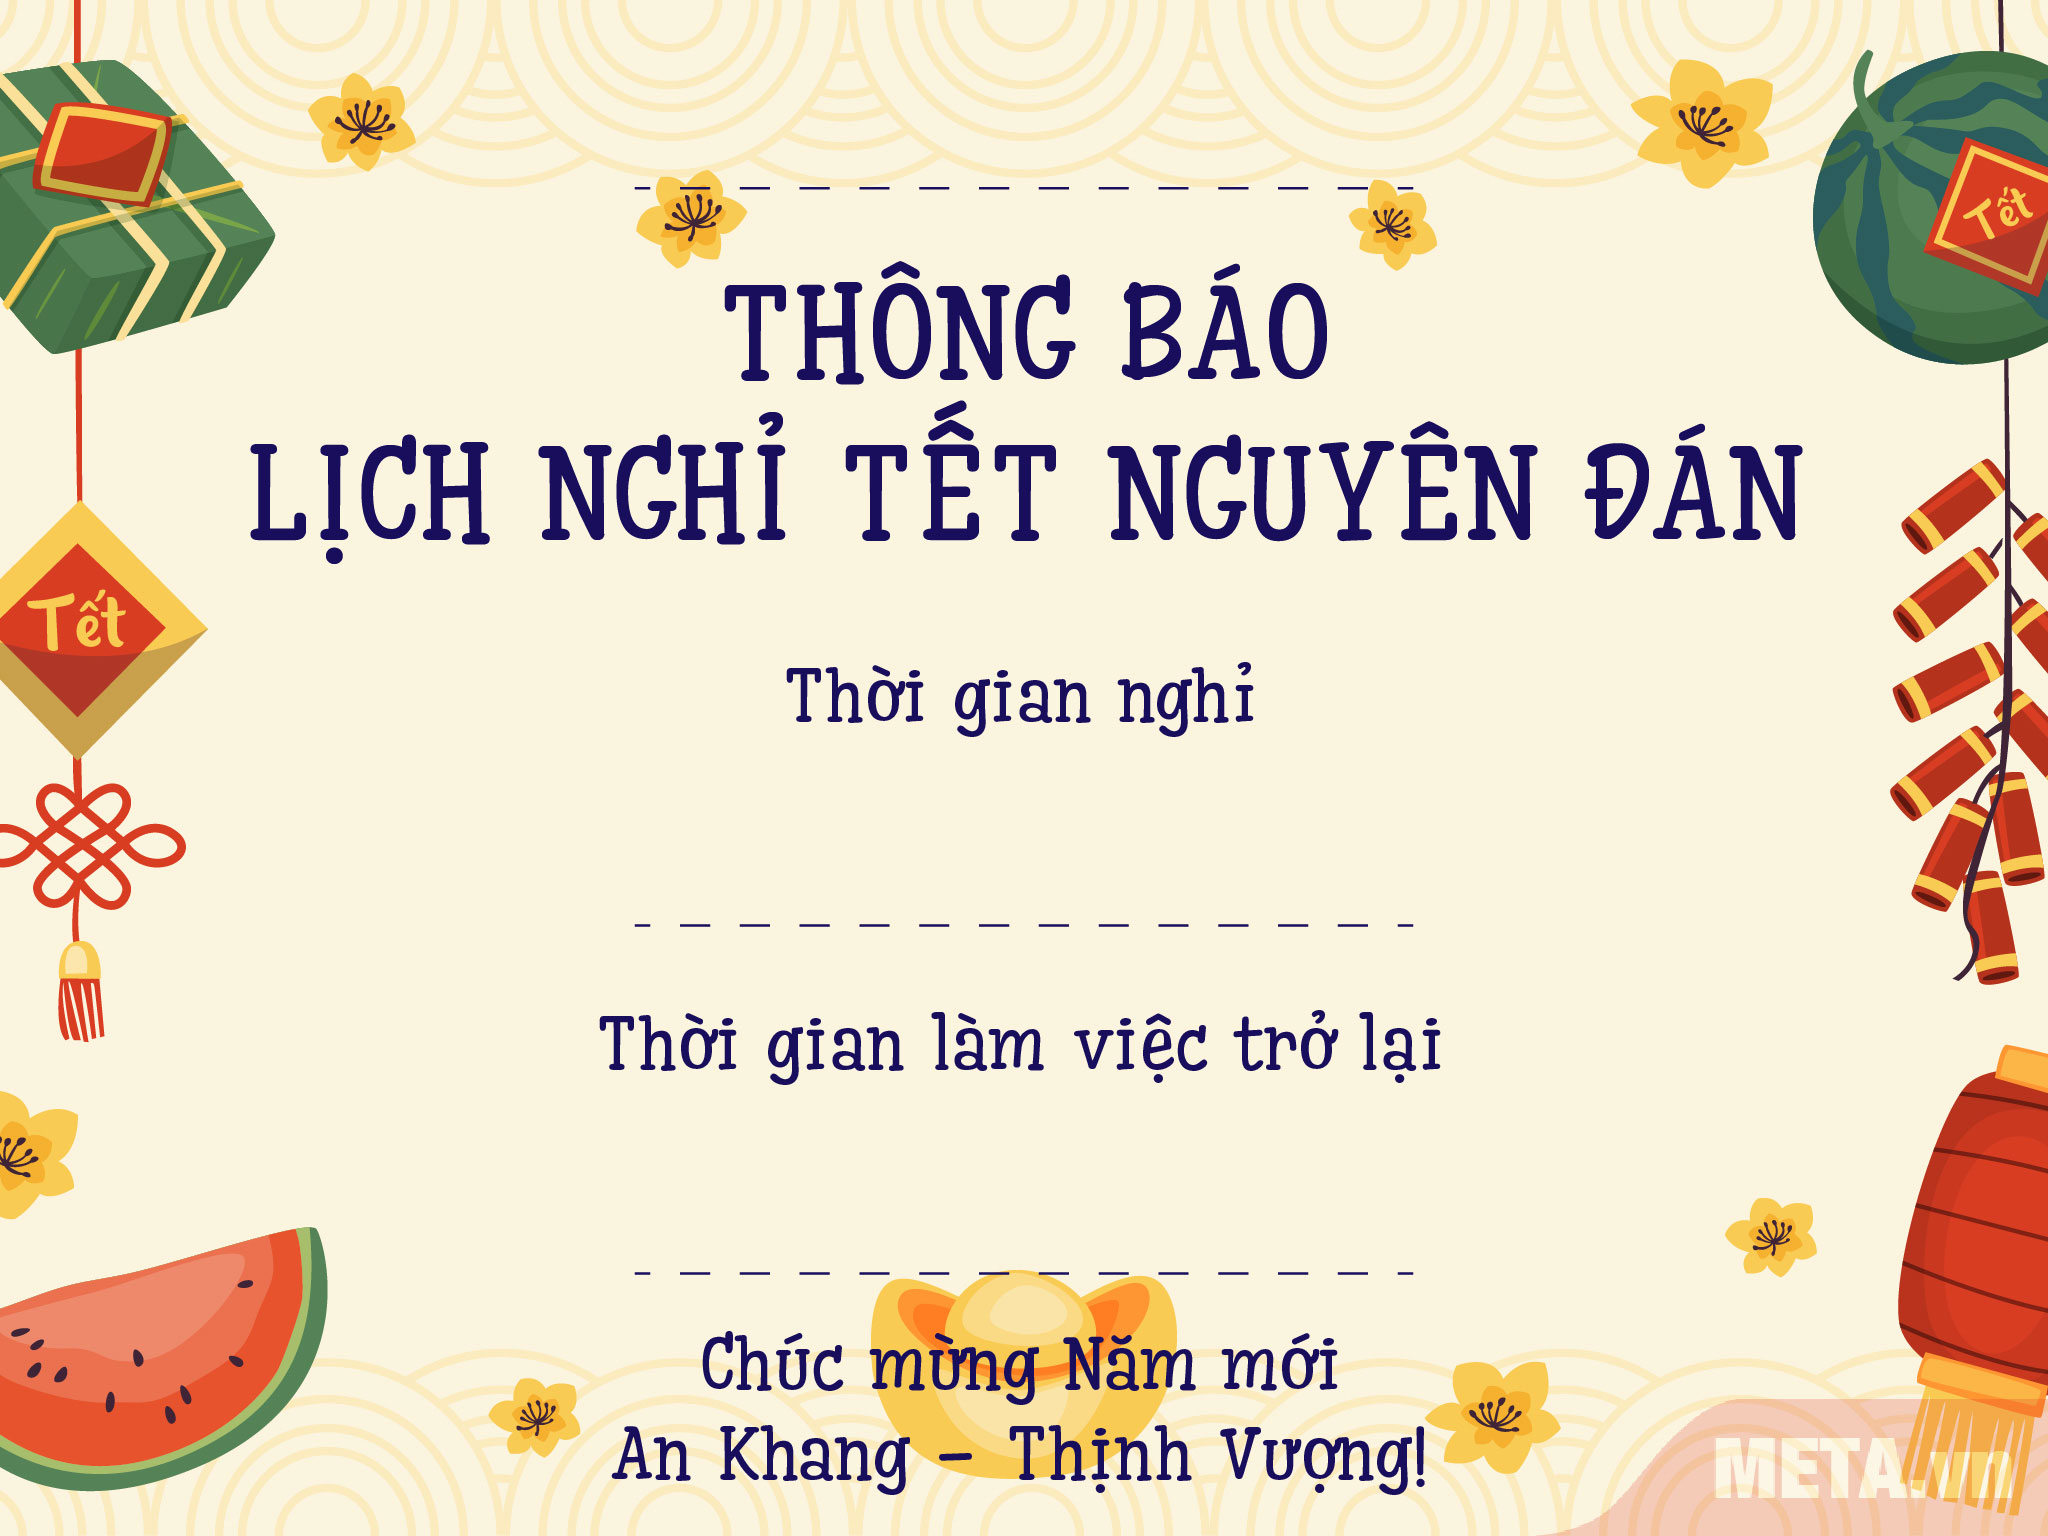 Thiệp Thông Báo Nghỉ Tết là một trong những phong tục truyền thống đặc trưng của người Việt. Hãy khám phá những thiệp thông báo tuyệt đẹp và ý nghĩa để chia sẻ niềm vui của mùa xuân. Hãy xem qua hình ảnh liên quan để tìm kiếm những thiệp thật đẹp để tặng người thân yêu.